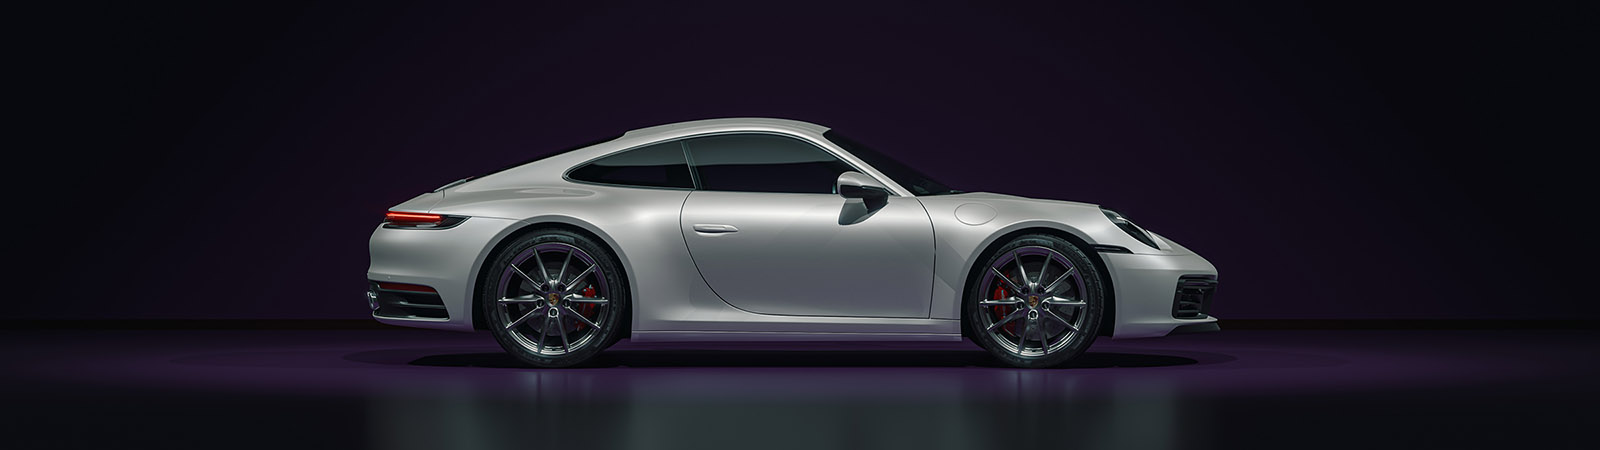 5120×1440 Porsche Background – jeffpatton